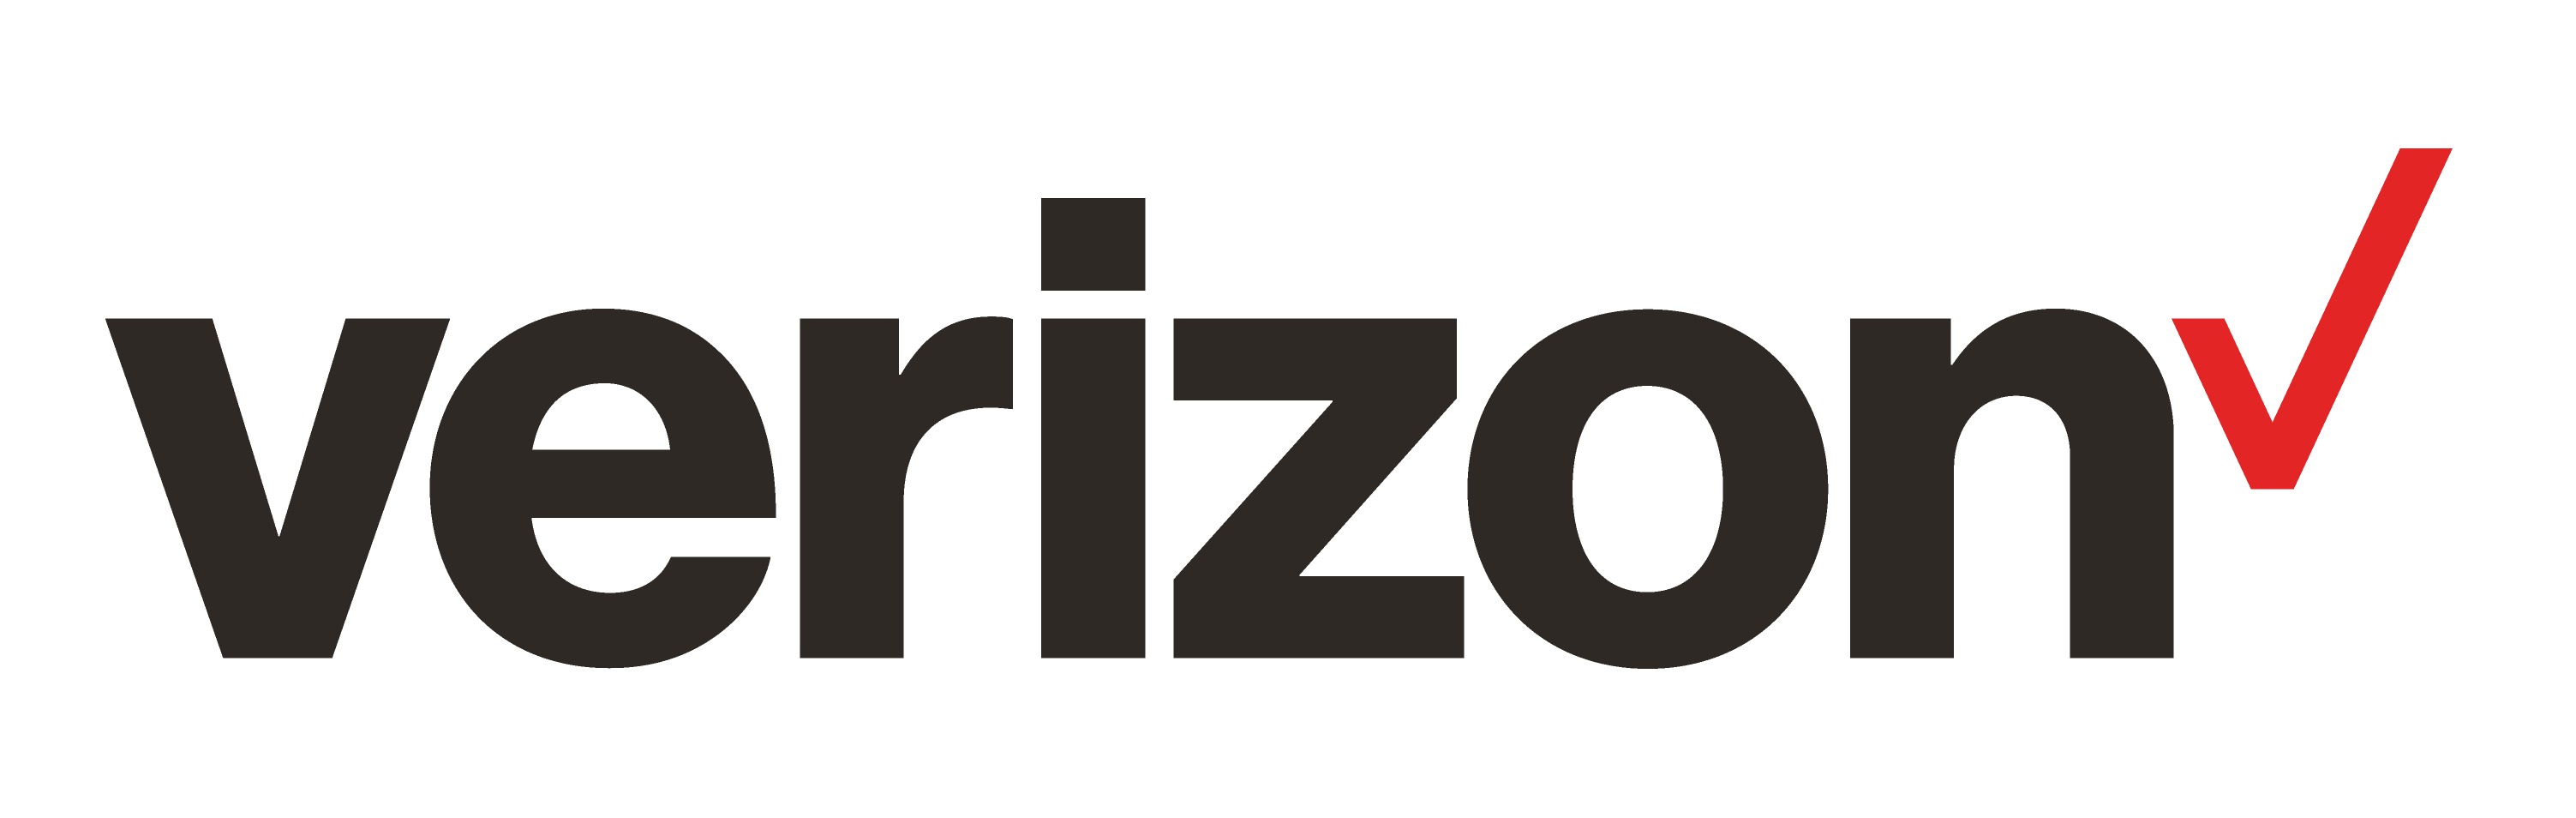 Download Verizon Logo Png Image For Free